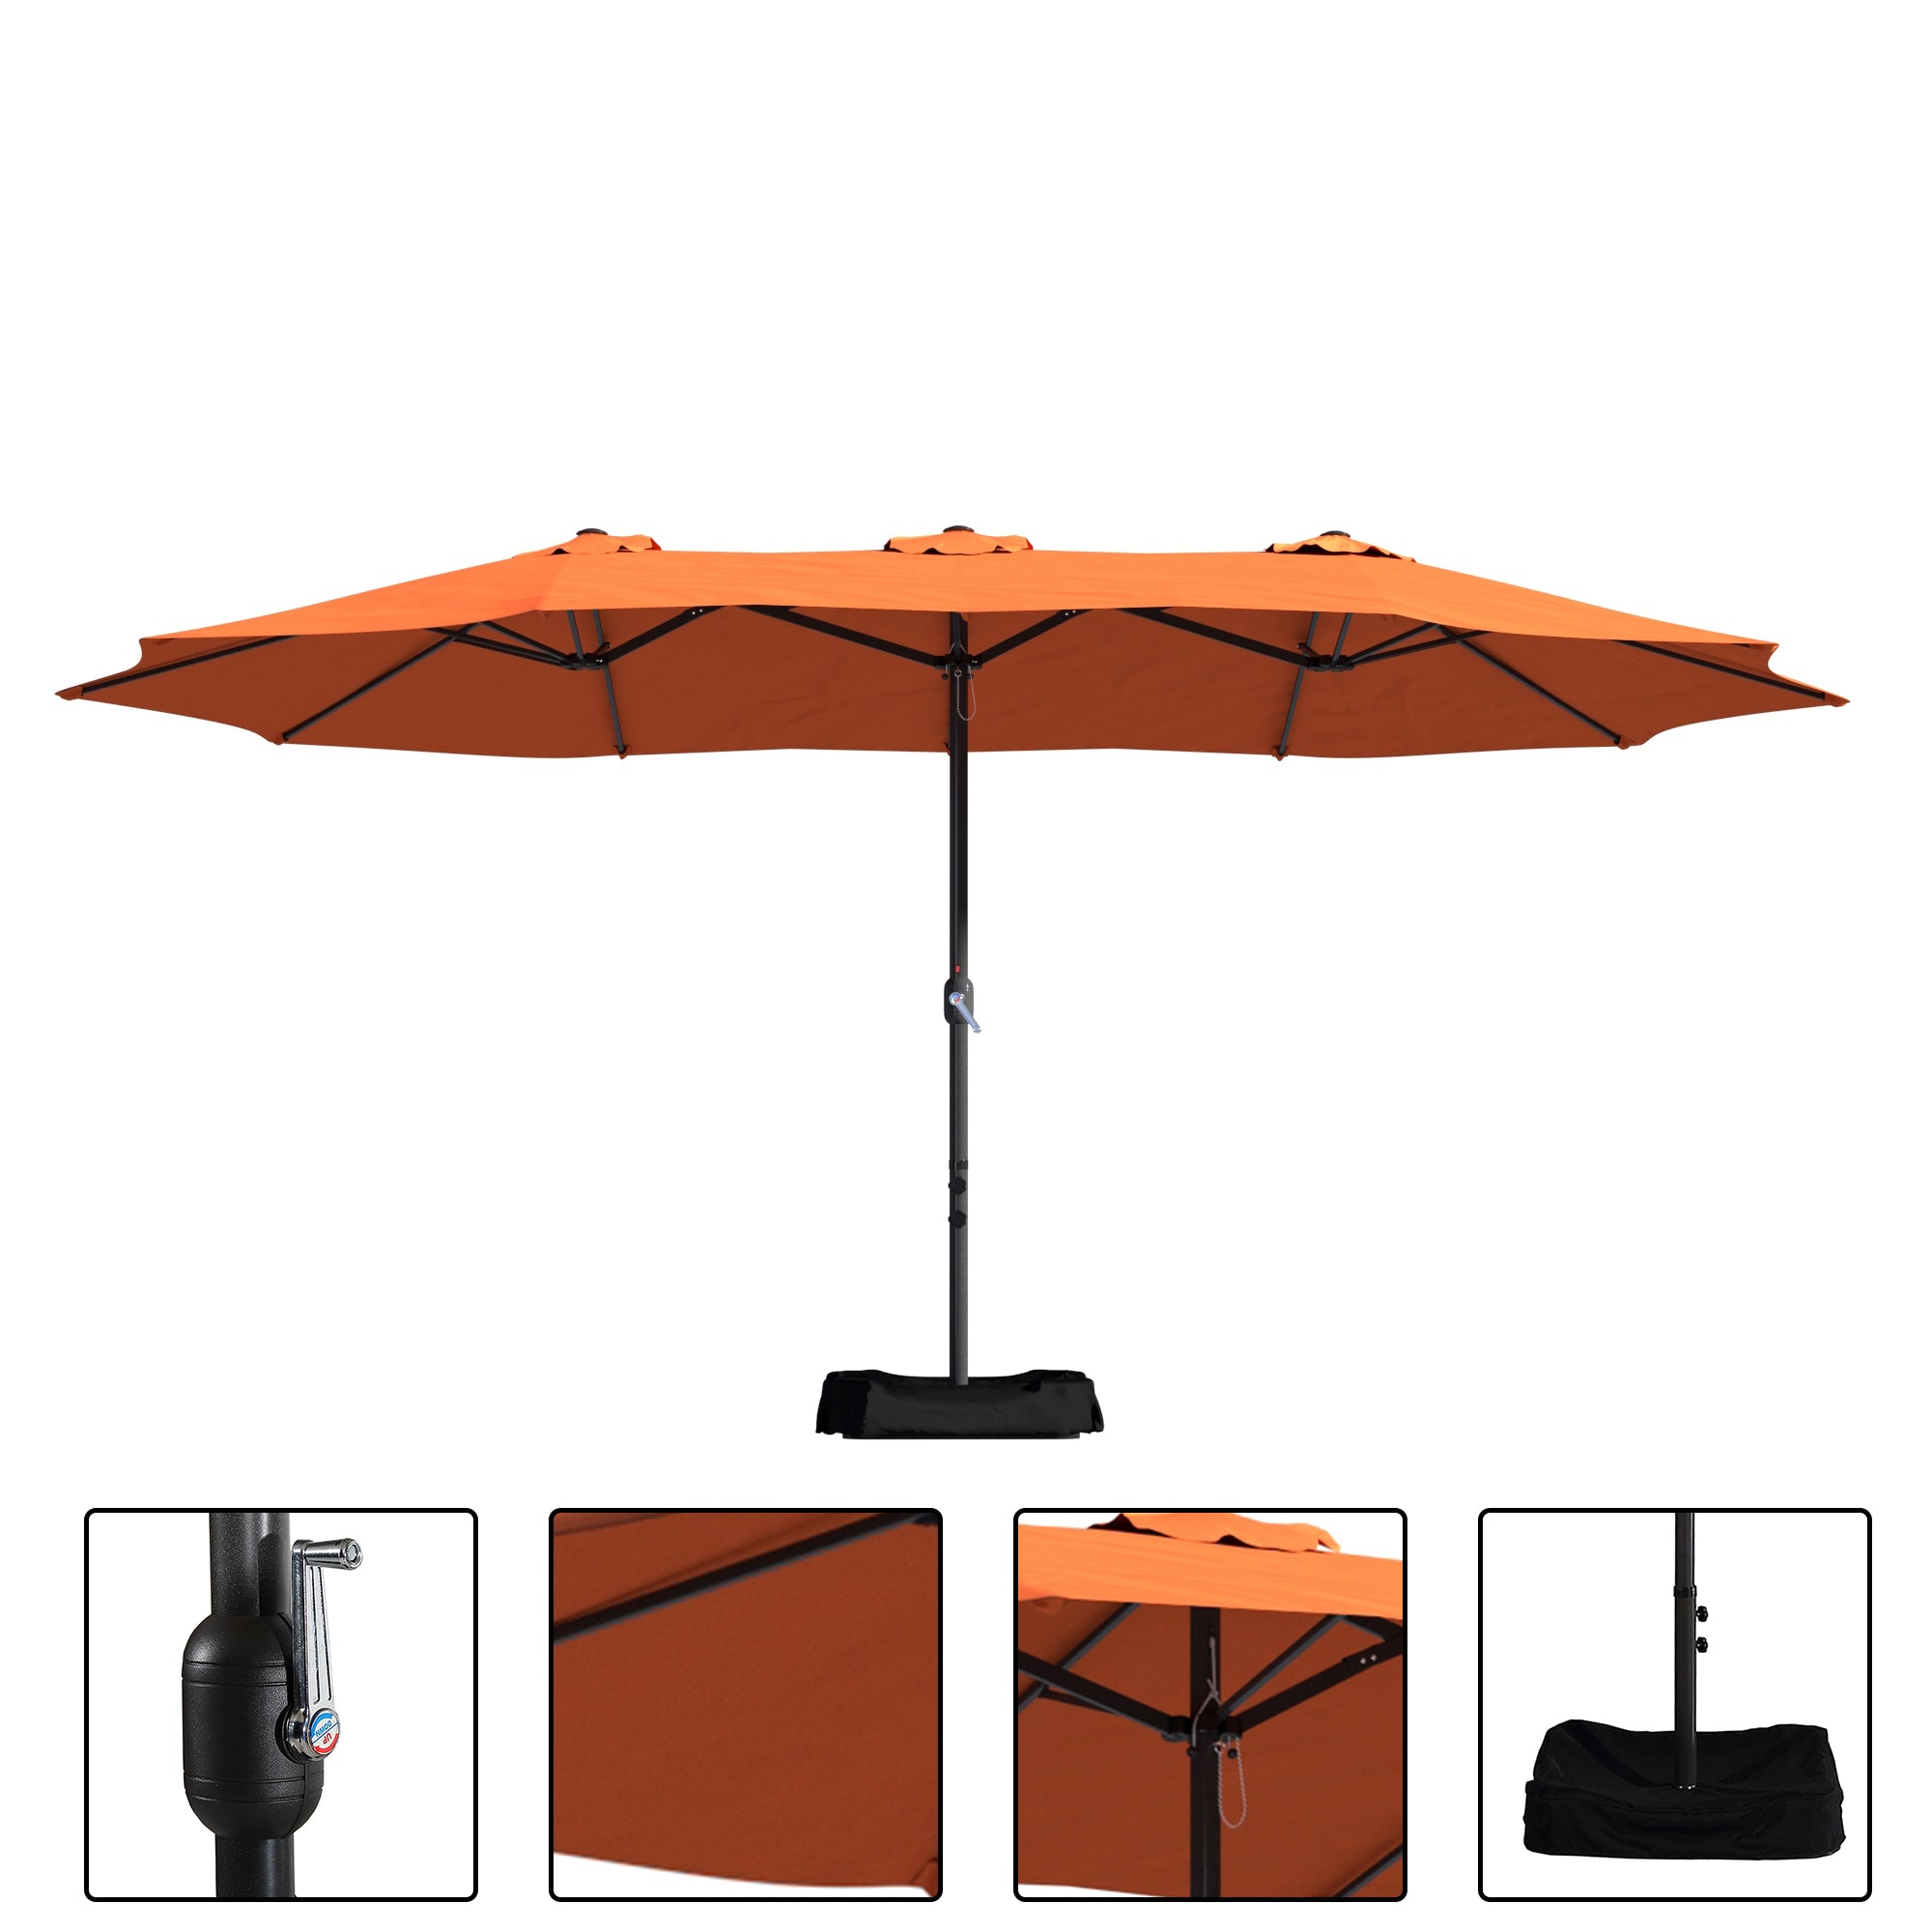 Boyel Living 15ft Double-Sided Patio Market Umbrella with iron Base Large Outdoor Table Umbrella(Orange)